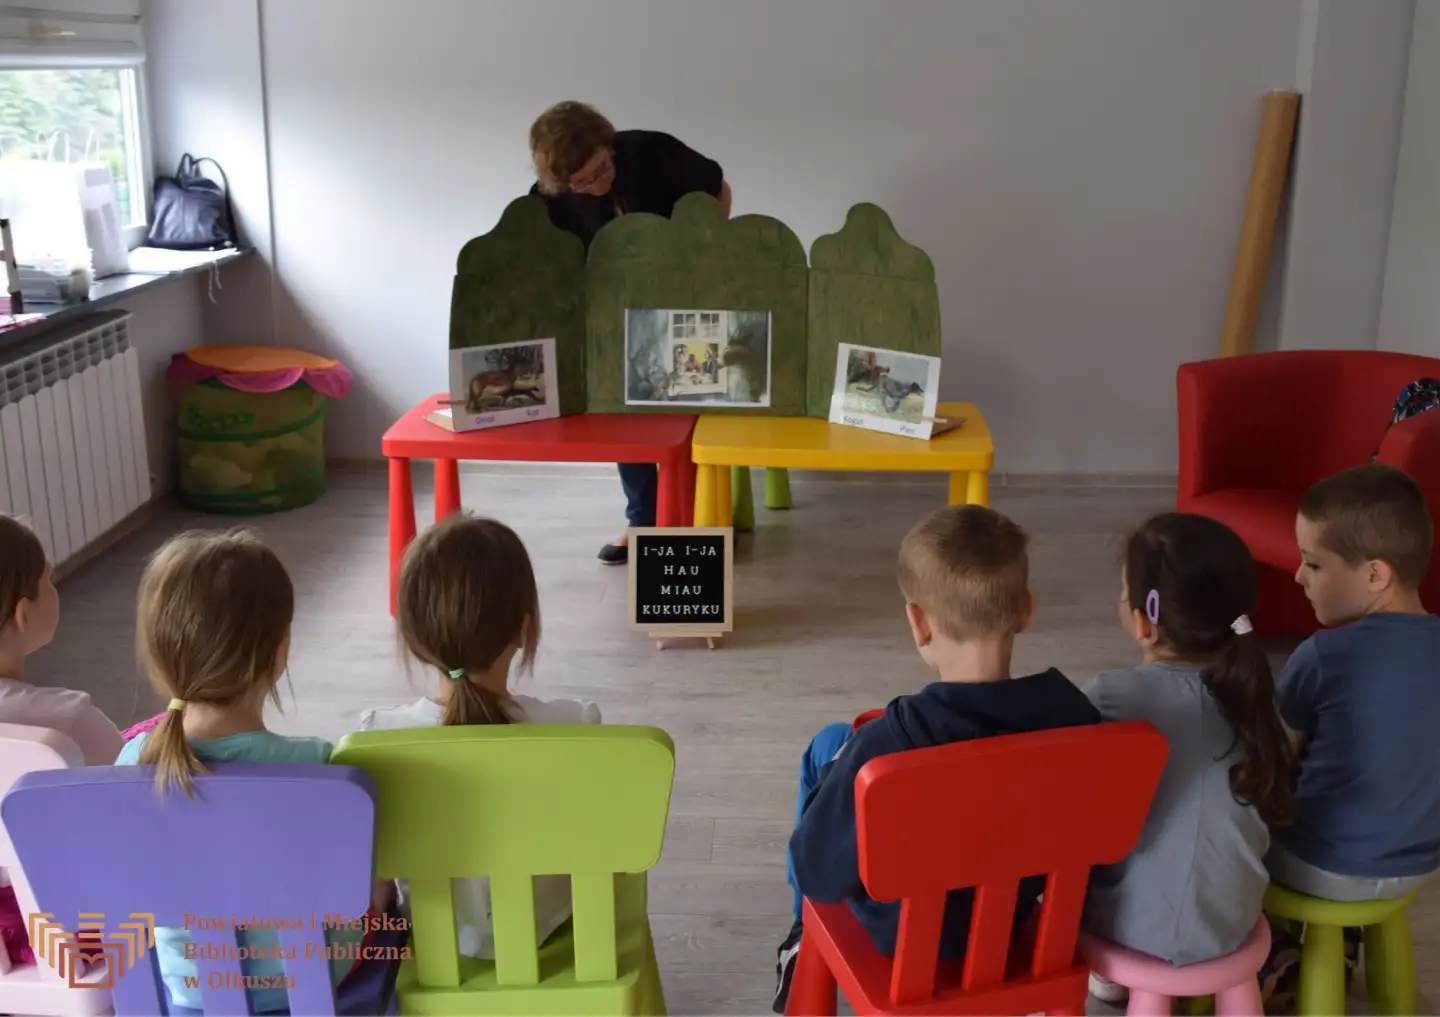 Na pierwszym planie grupa dzieci siedząca na krzesłkach. Na drugim planie dwa stoliczki z obrazkami z książek oraz Pani pochylająca się nad ilustracjami.